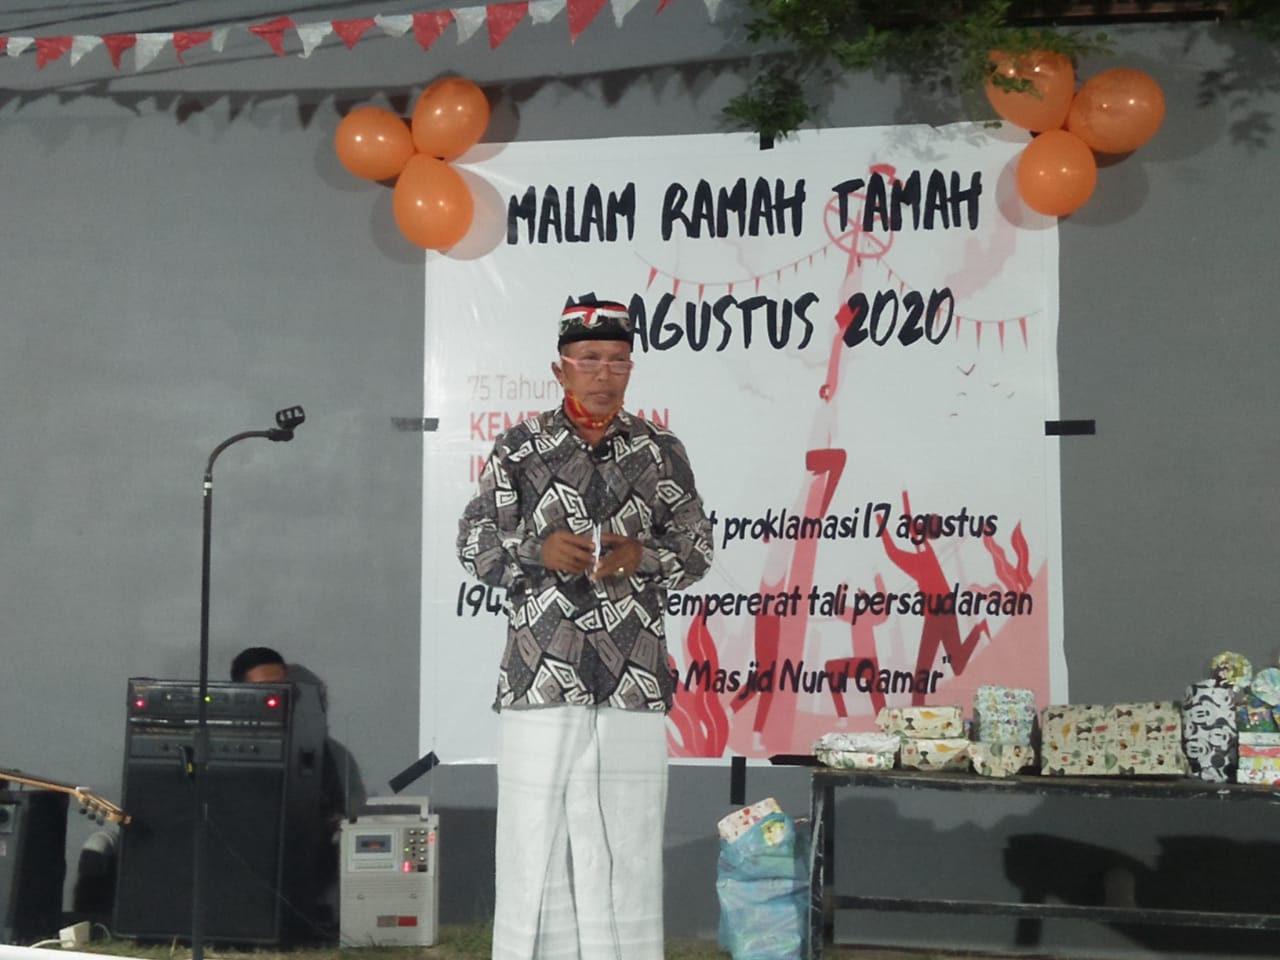 Remaja Masjid Nurul Qamar selama sepekan dalam rangka memperingati hari Kemerdekaan 75 tahun Indonesia Merdeka telah resmi ditutup dengan sesi acara ramah tamah, di pelataran Masjid Nurul Qamar, Paccinnongan Pao-pao, Kabupaten Gowa, Sabtu (22/8/2020).